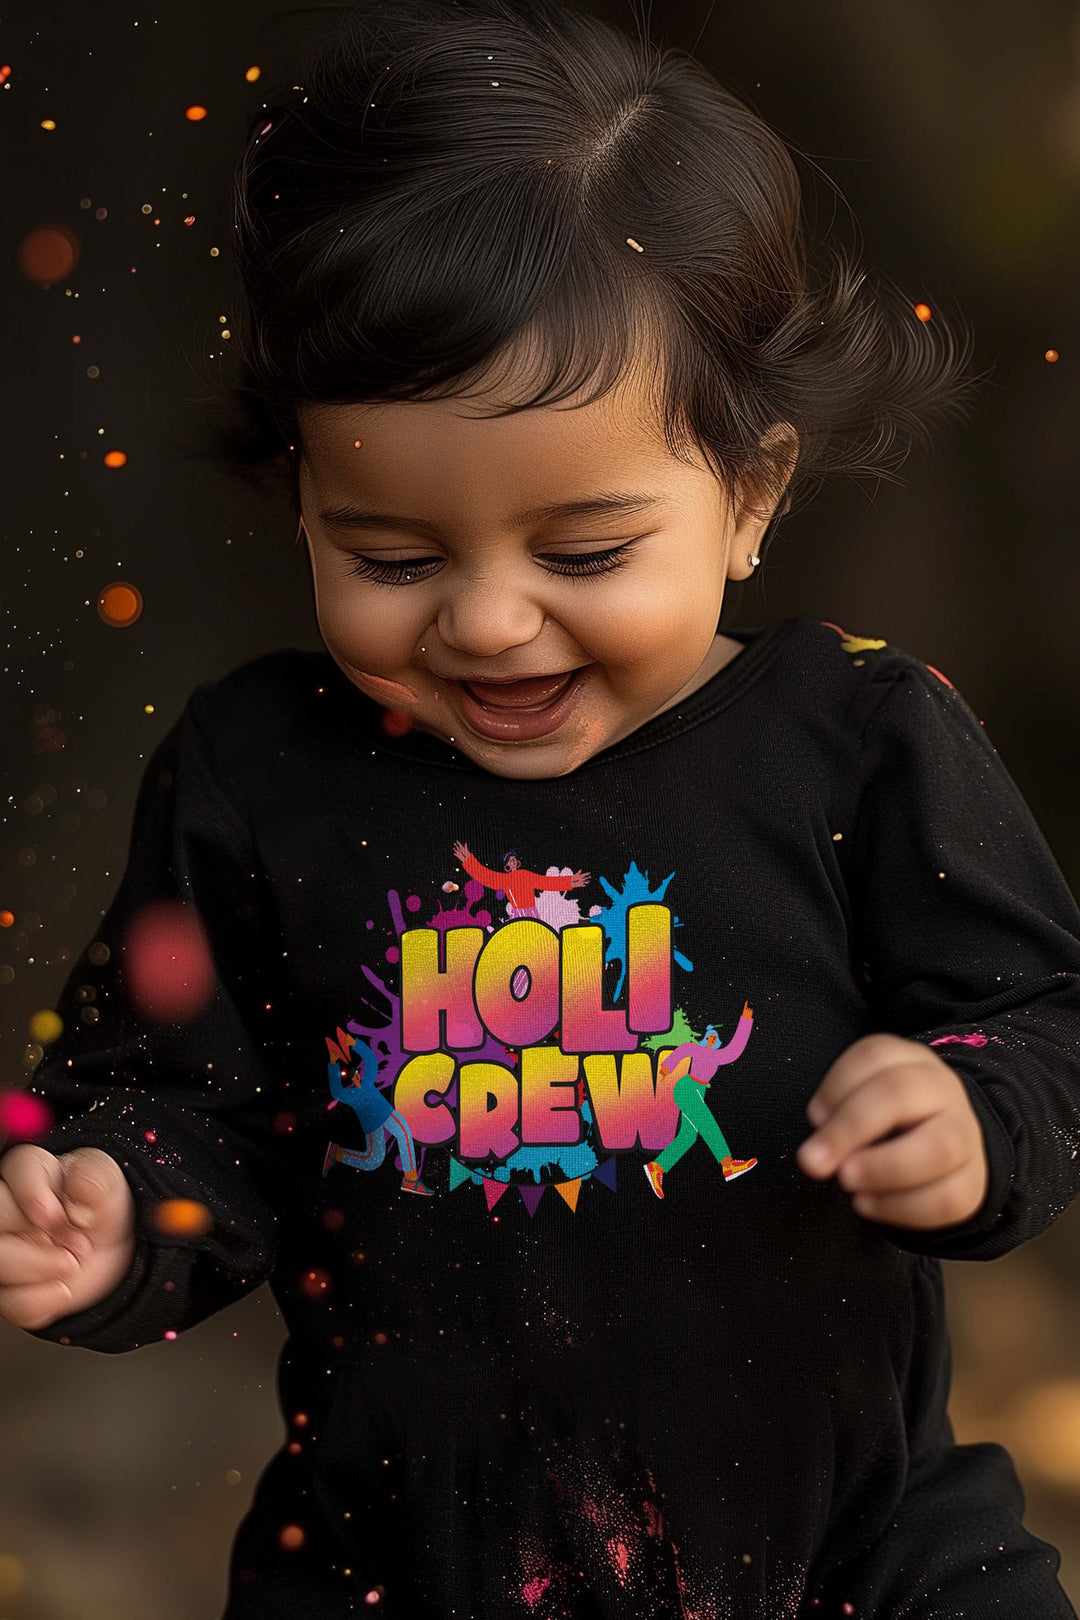 Holi Crew Baby Romper | Onesies